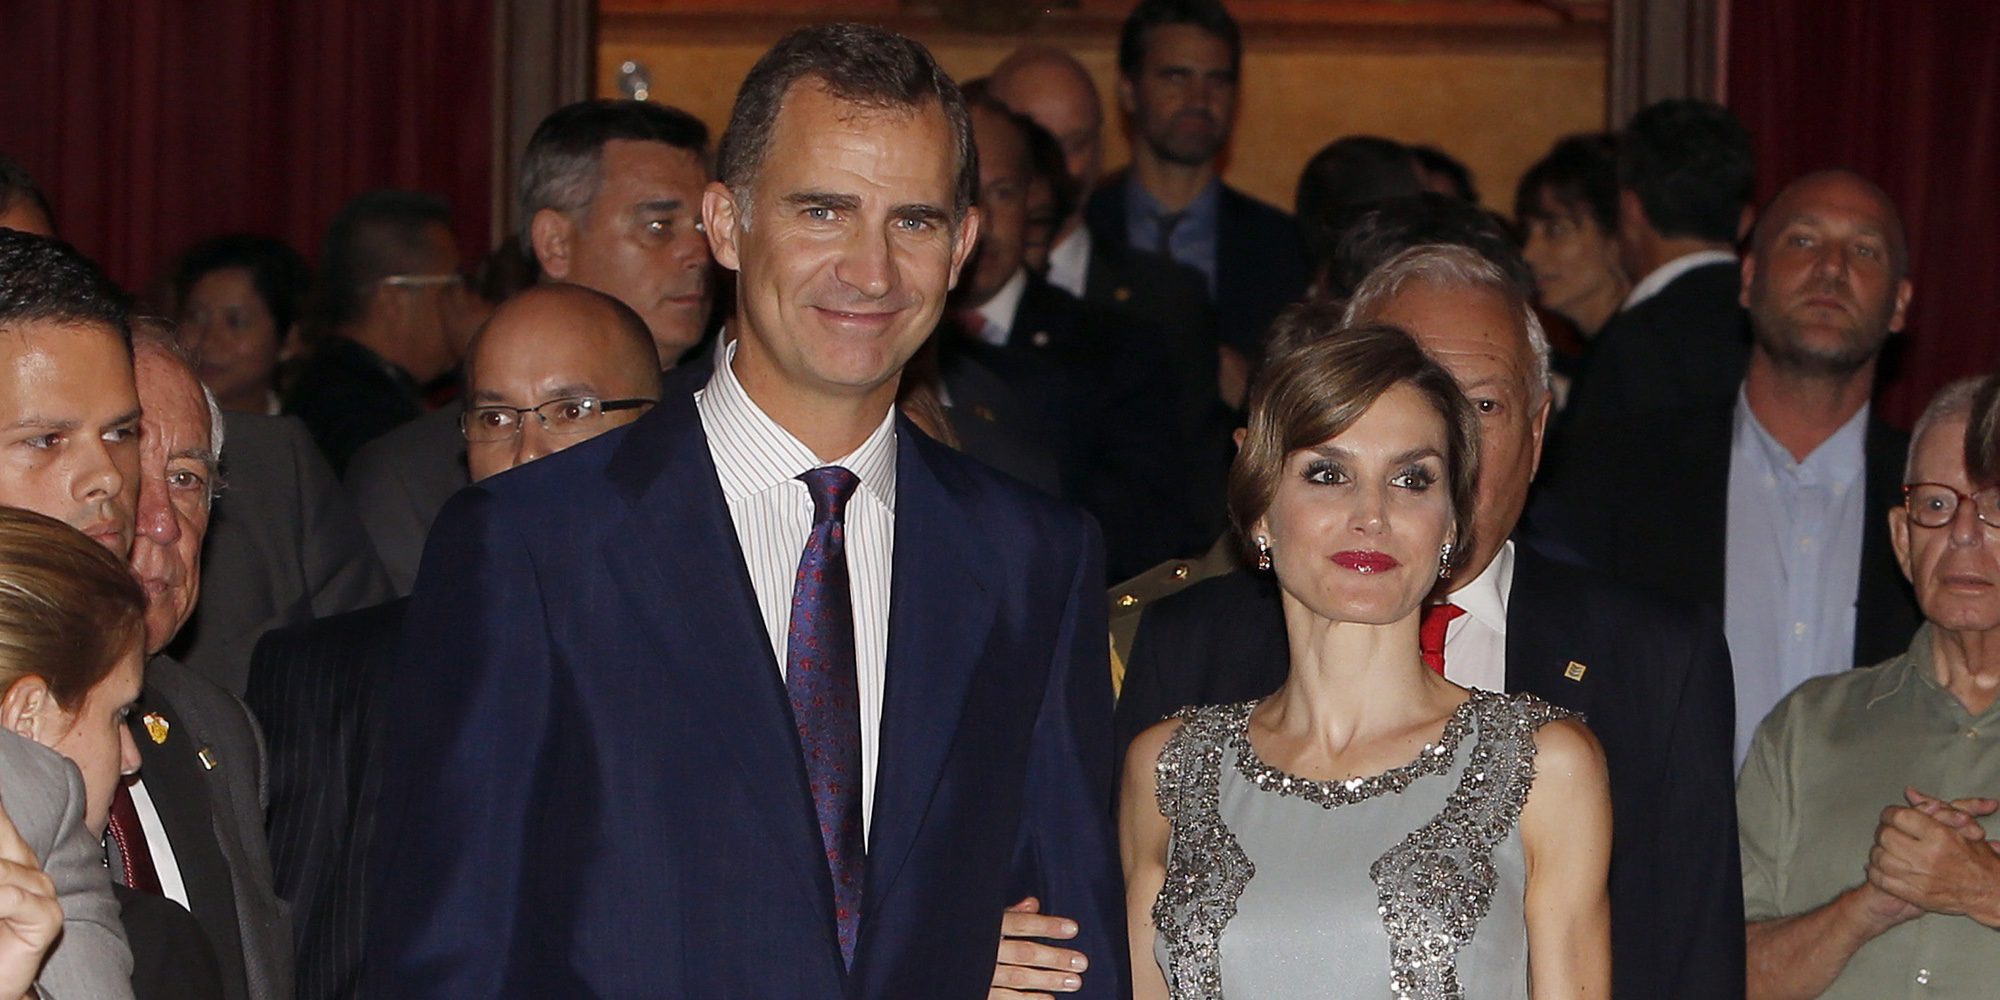 El divertido sábado de los Reyes Felipe y Letizia: monólogo nocturno y paseo por Madrid